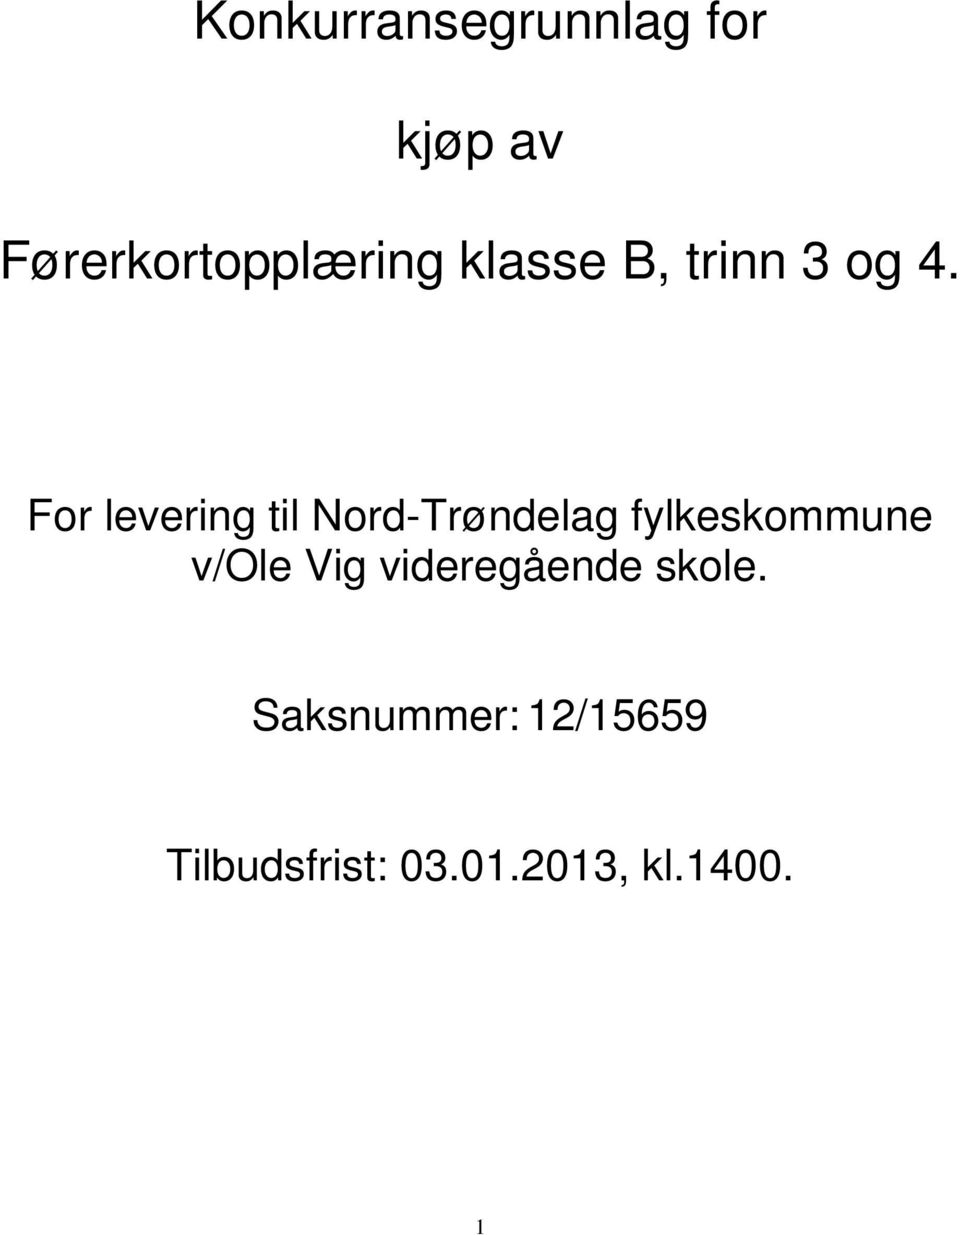 For levering til Nord-Trøndelag fylkeskommune v/ole